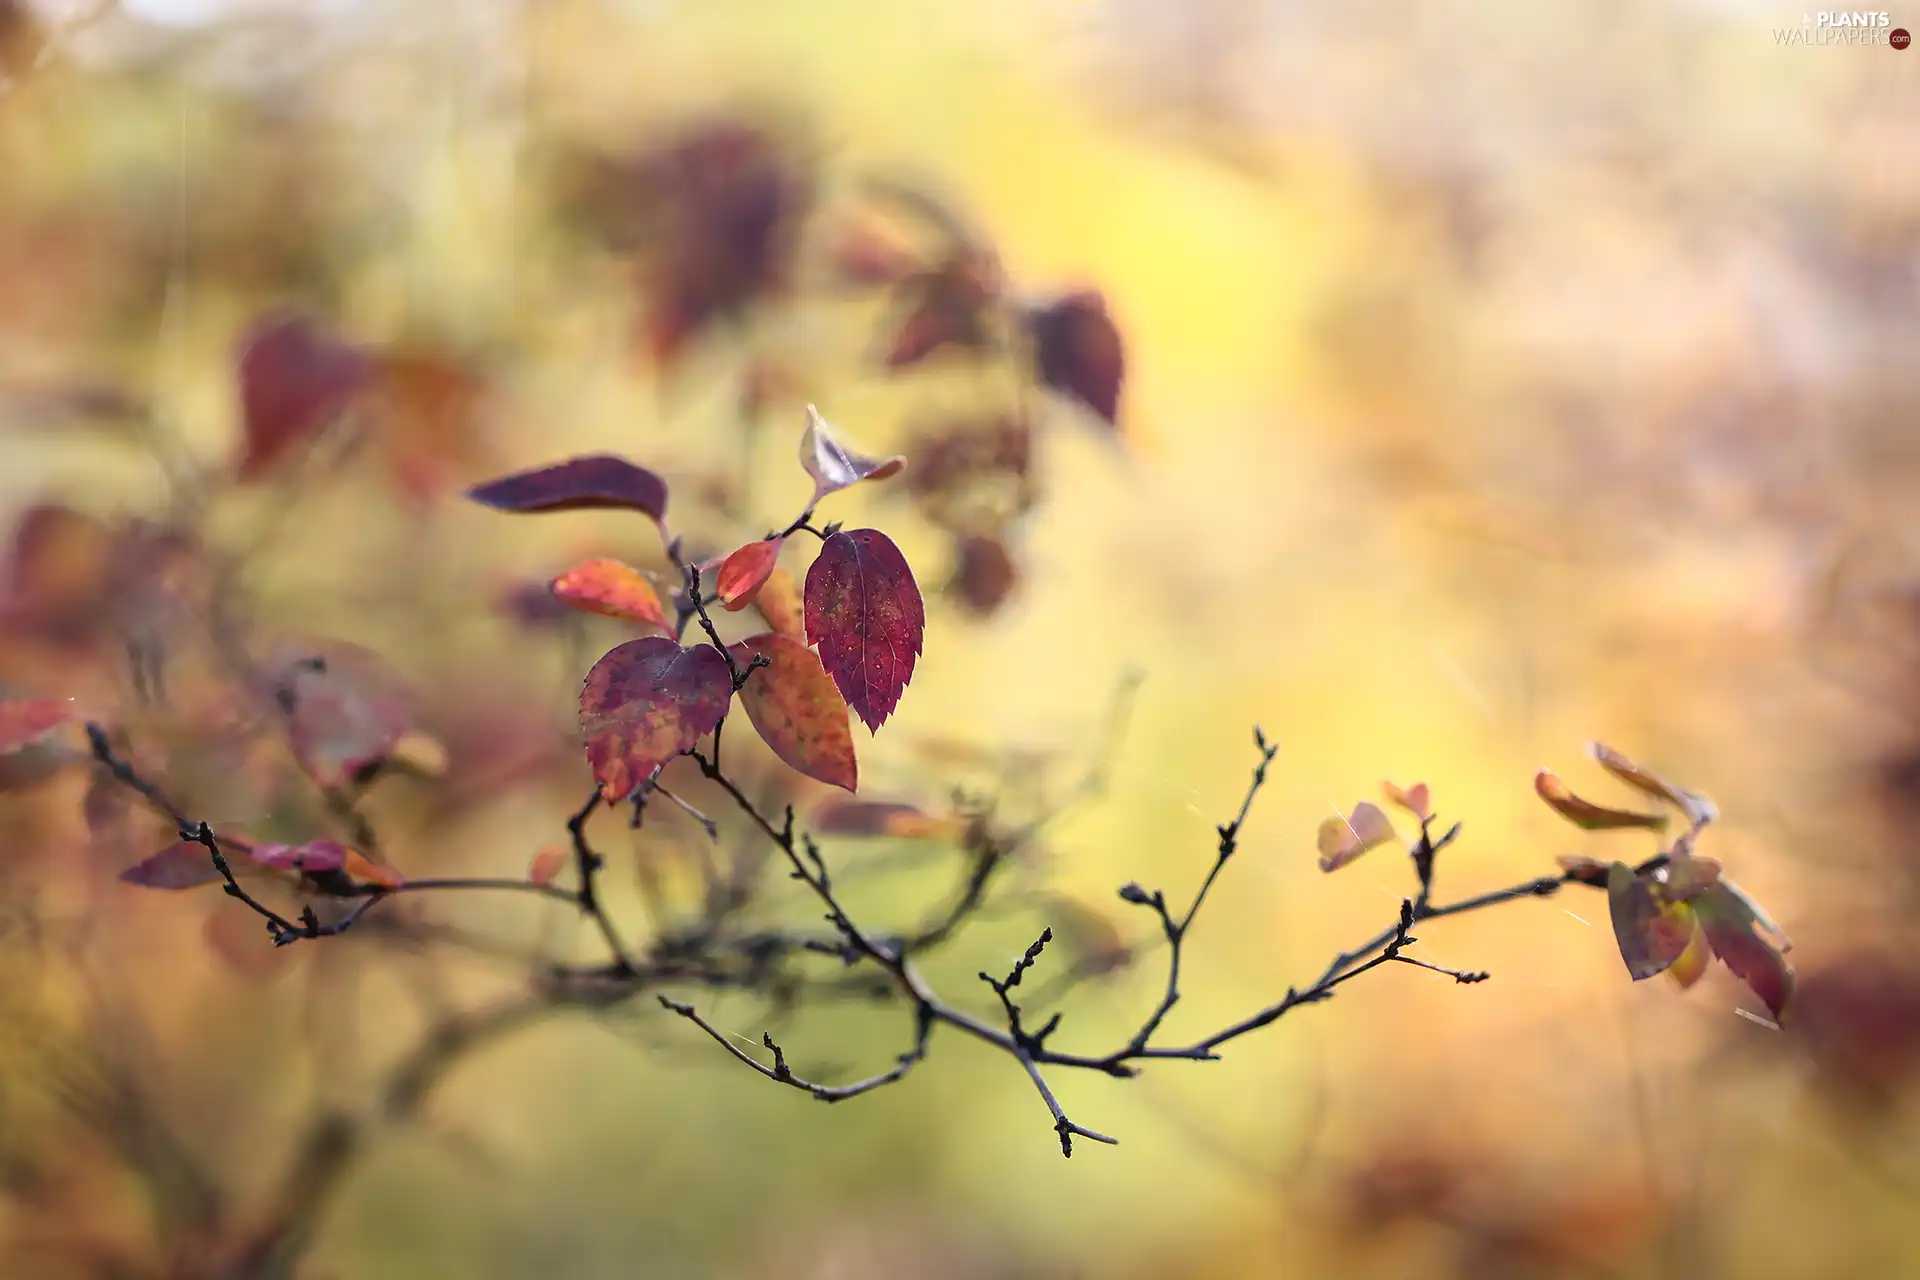 twig, Leaf, blurry background, Autumn